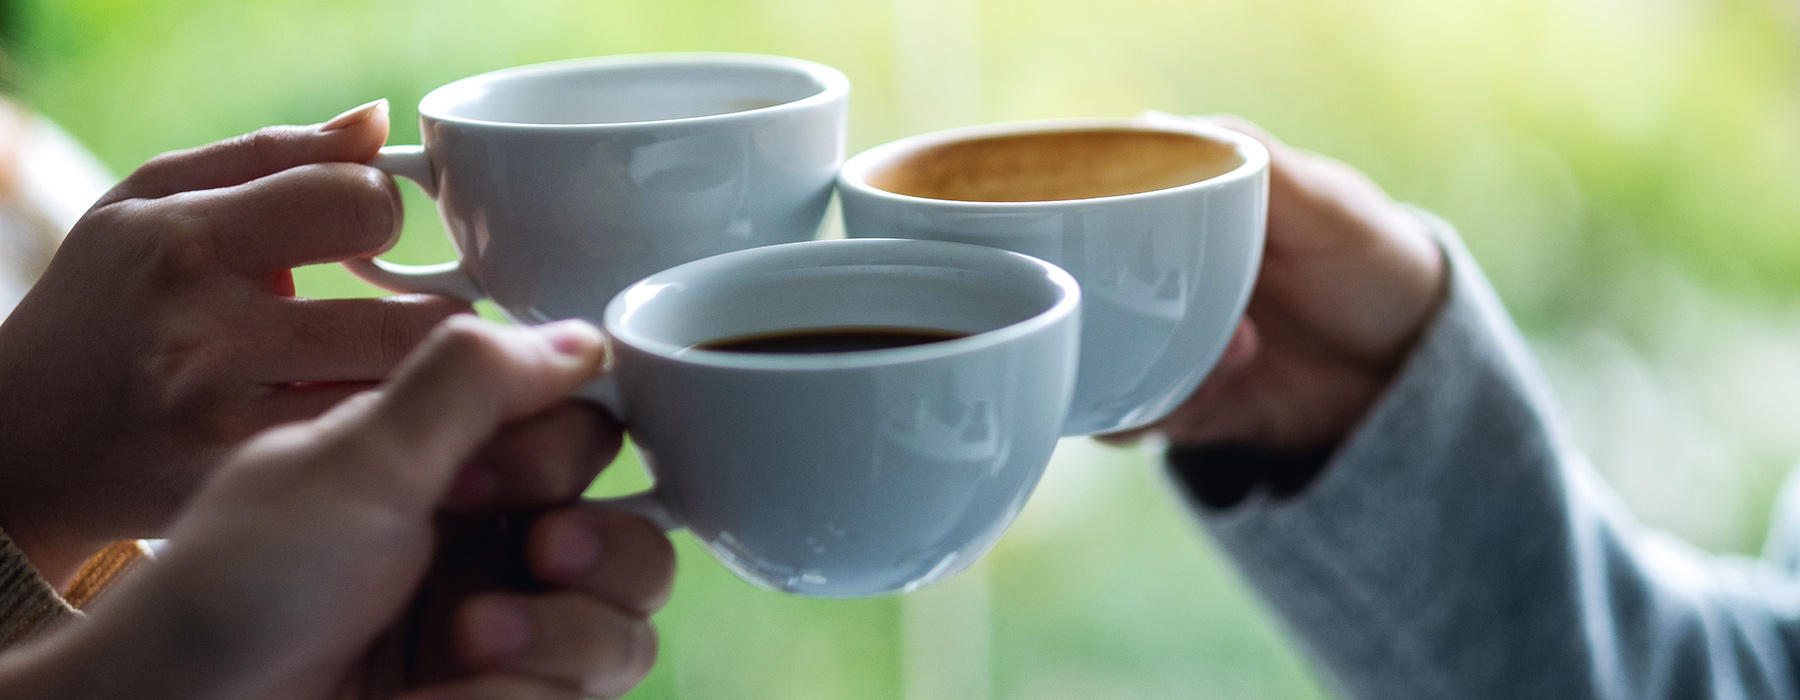 Kaffee im Büro: Purer Genuss aus der richtigen Kaffeemaschine